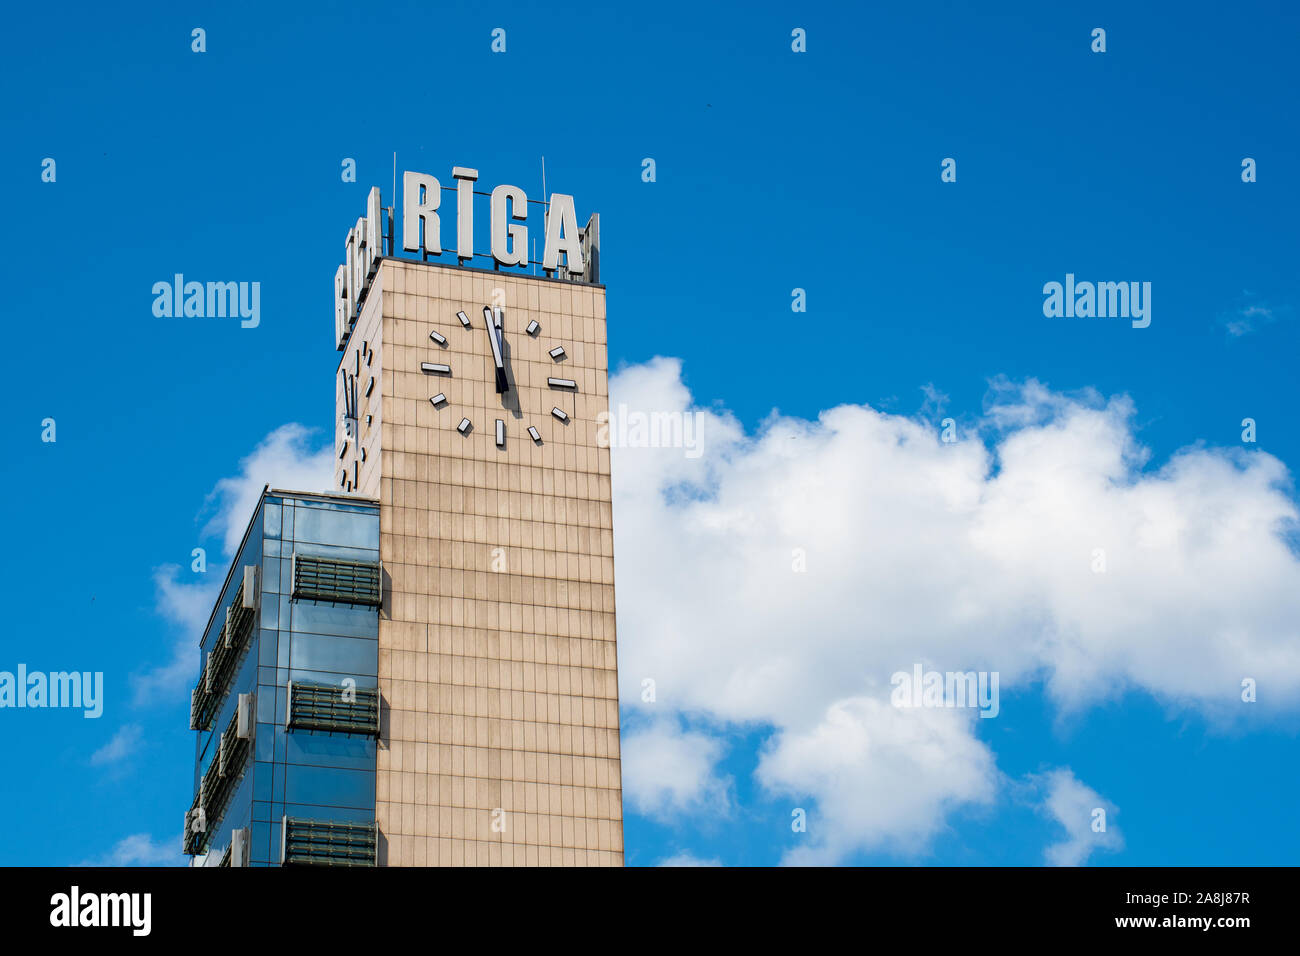 La gare centrale de Riga tour avec nom de la ville et de l'horloge, ciel bleu en arrière-plan Banque D'Images